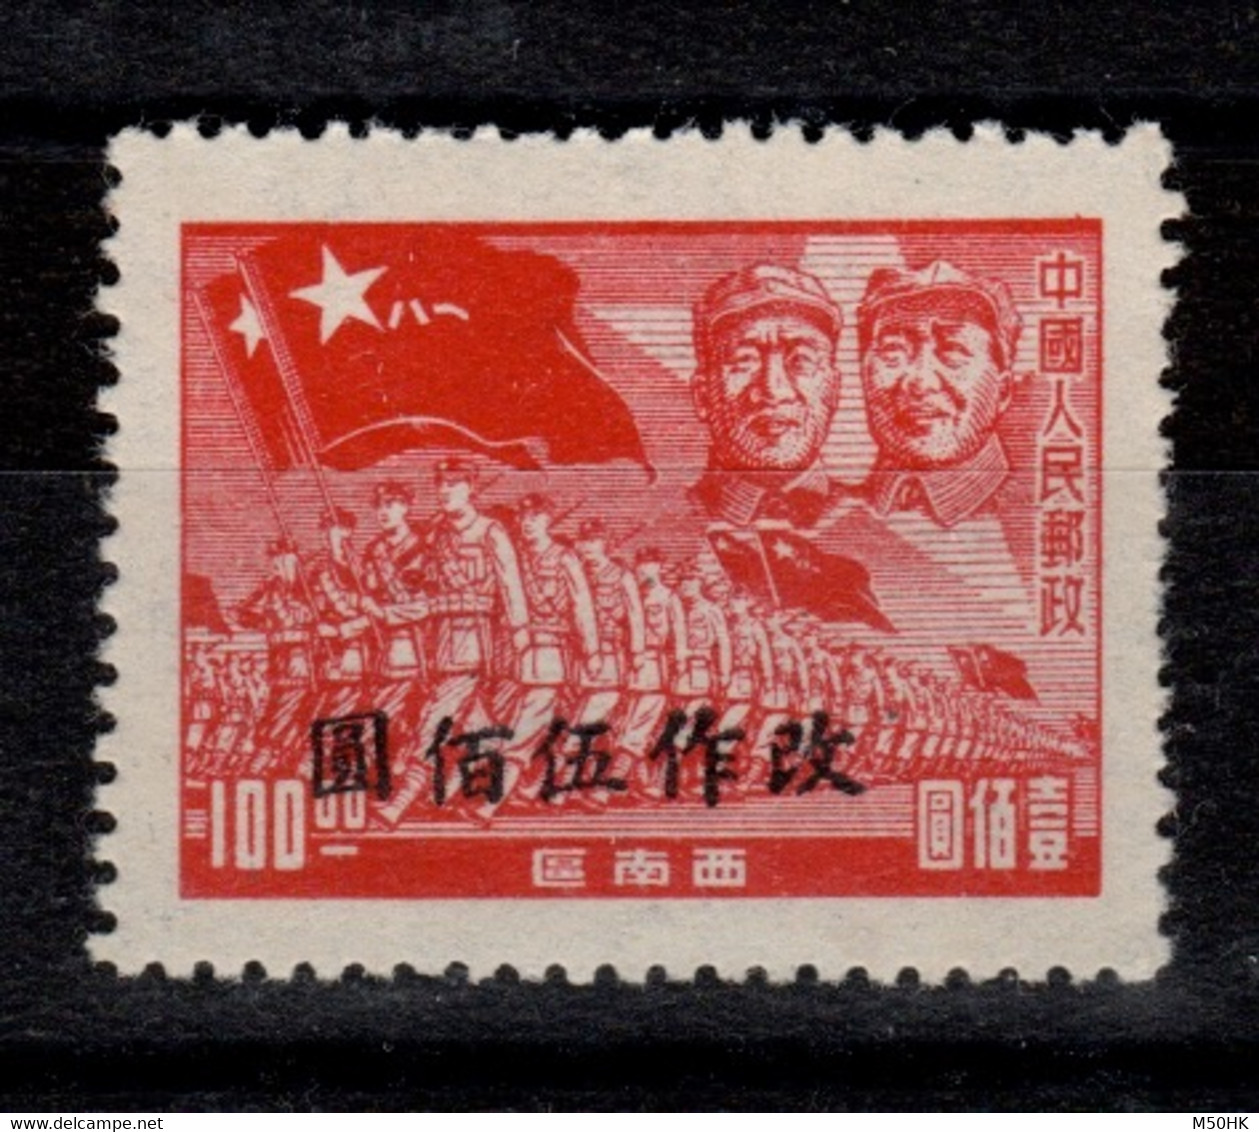 Chine Du Sud Ouest - Timbre Surchargé De 1949 / 1950 NSG MNG As Issued - Südwestchina 1949-50